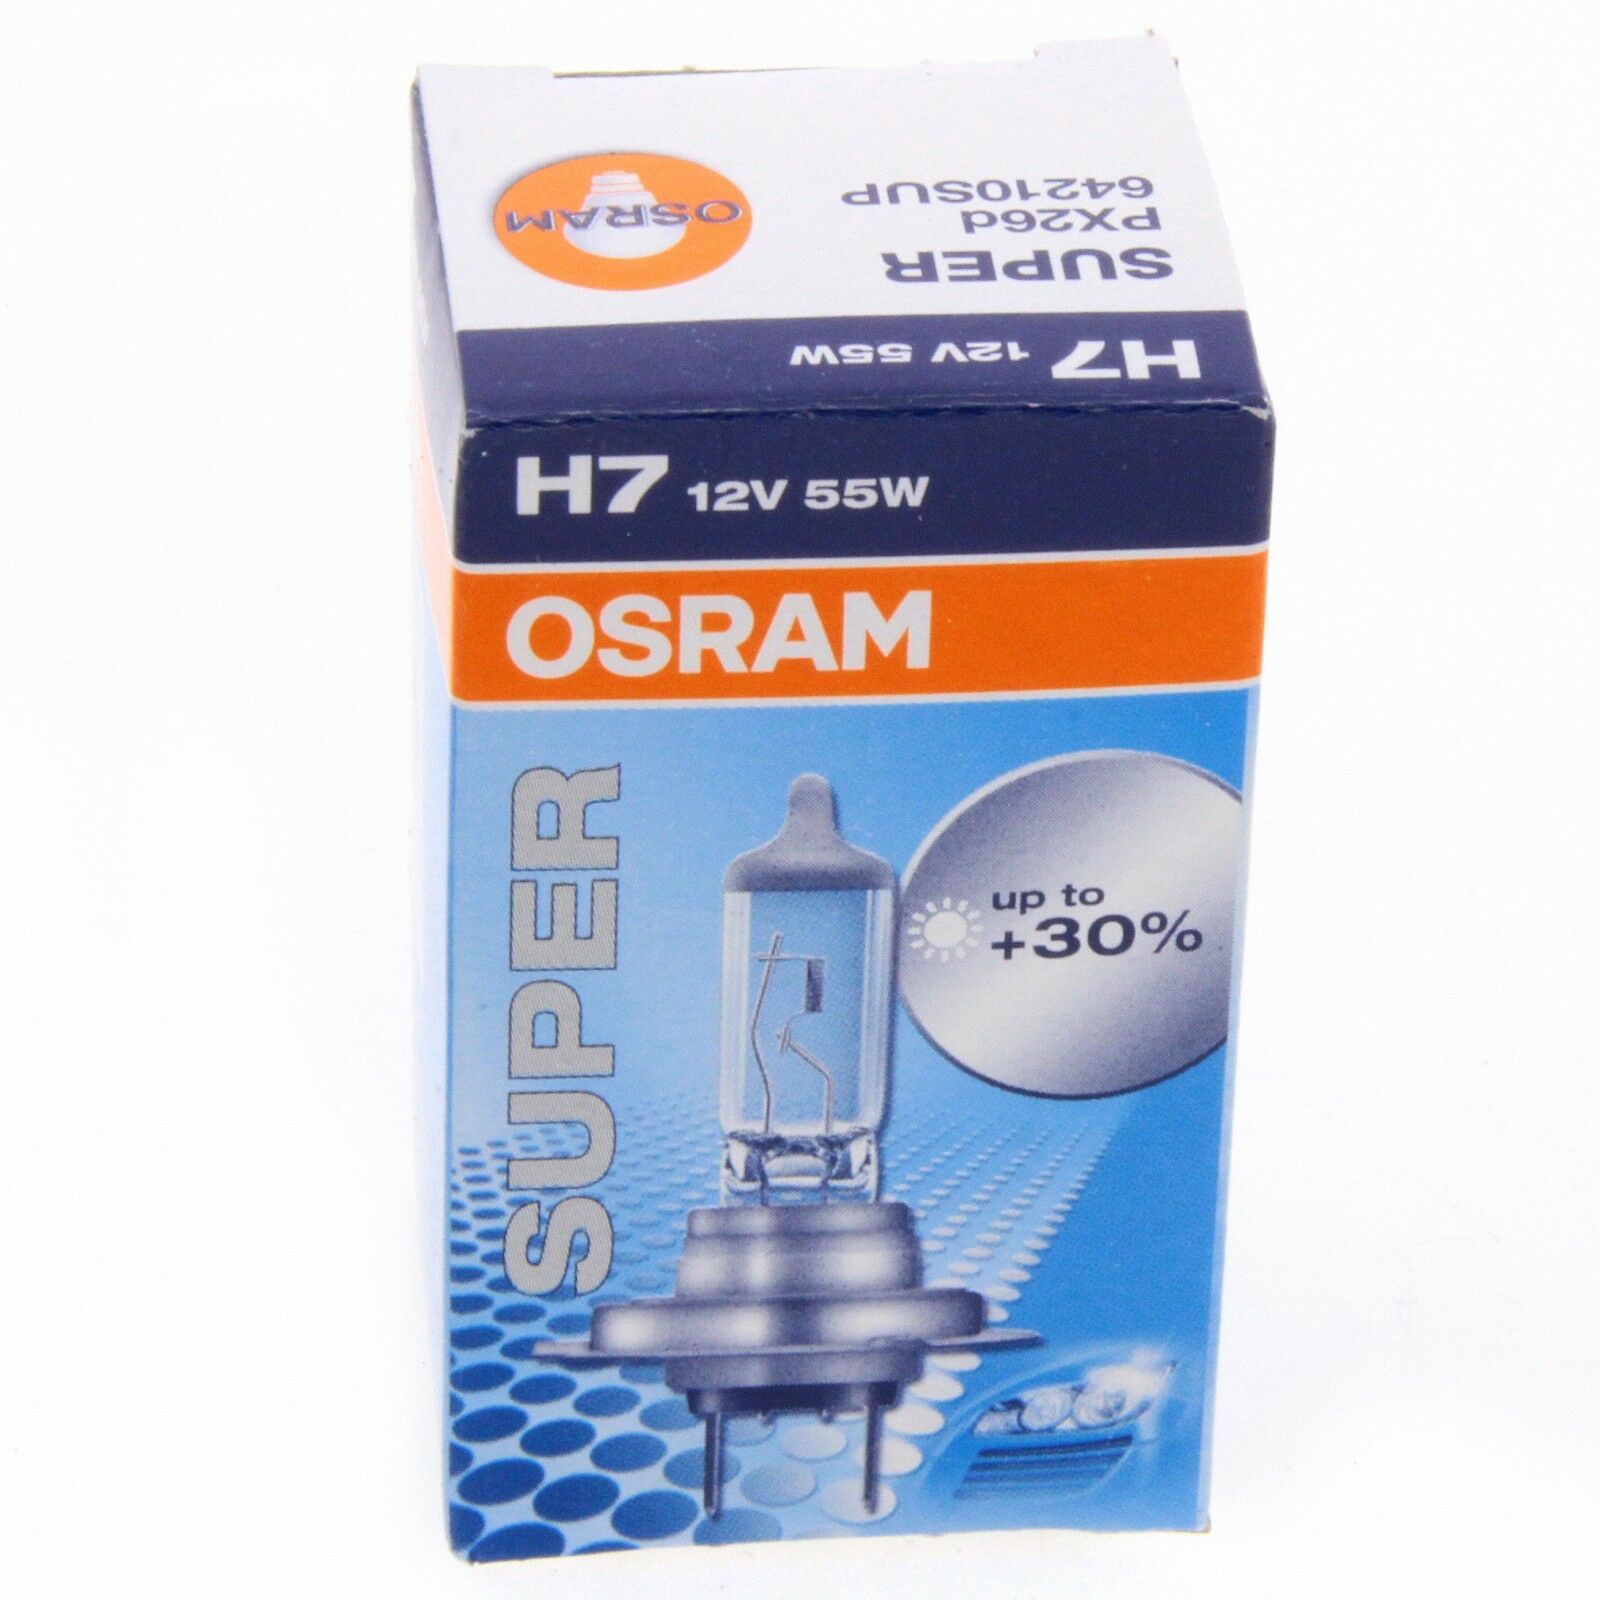 H7 OSRAM Super bis 30% mehr Licht Autolampe 64210SUP Single Box 1 Stück